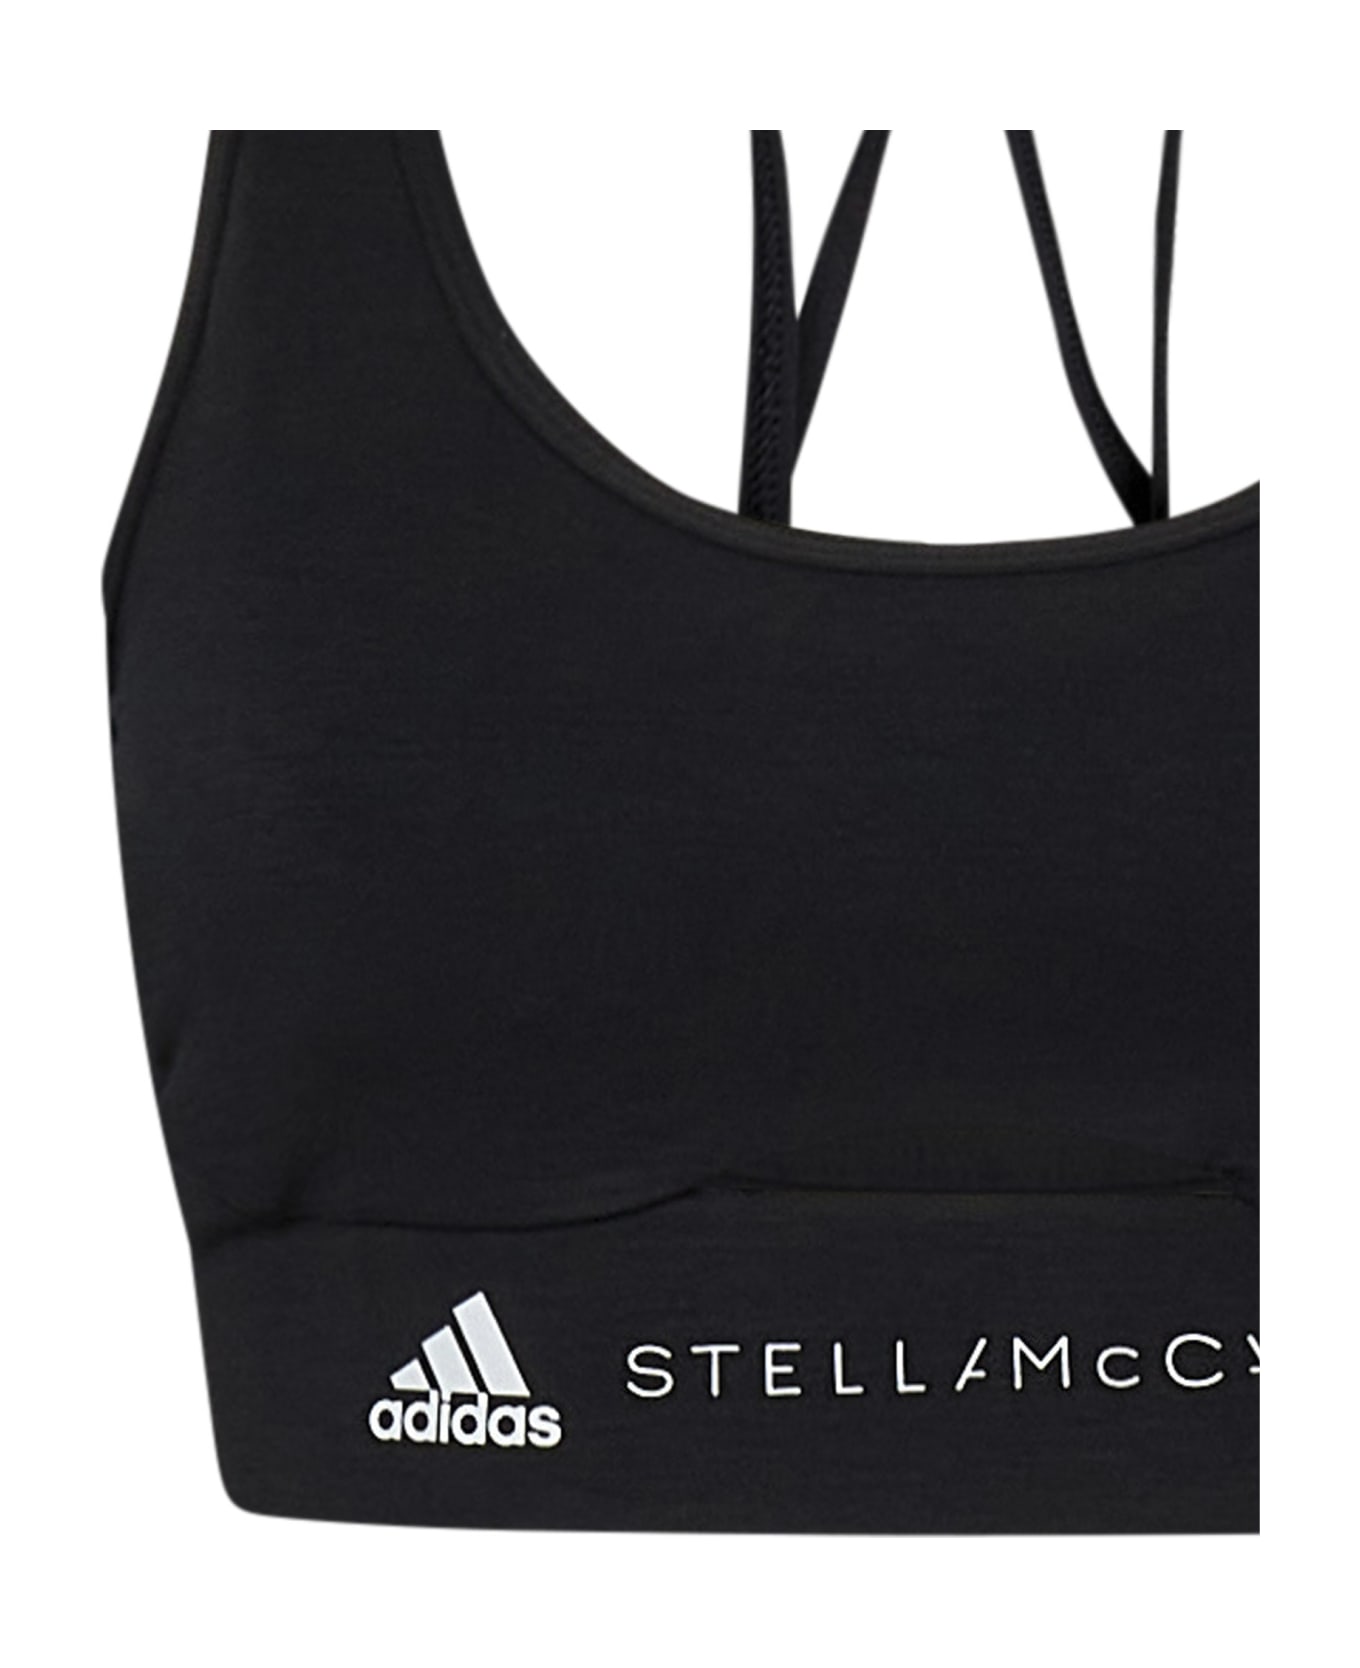 Adidas by Stella McCartney Top - Black